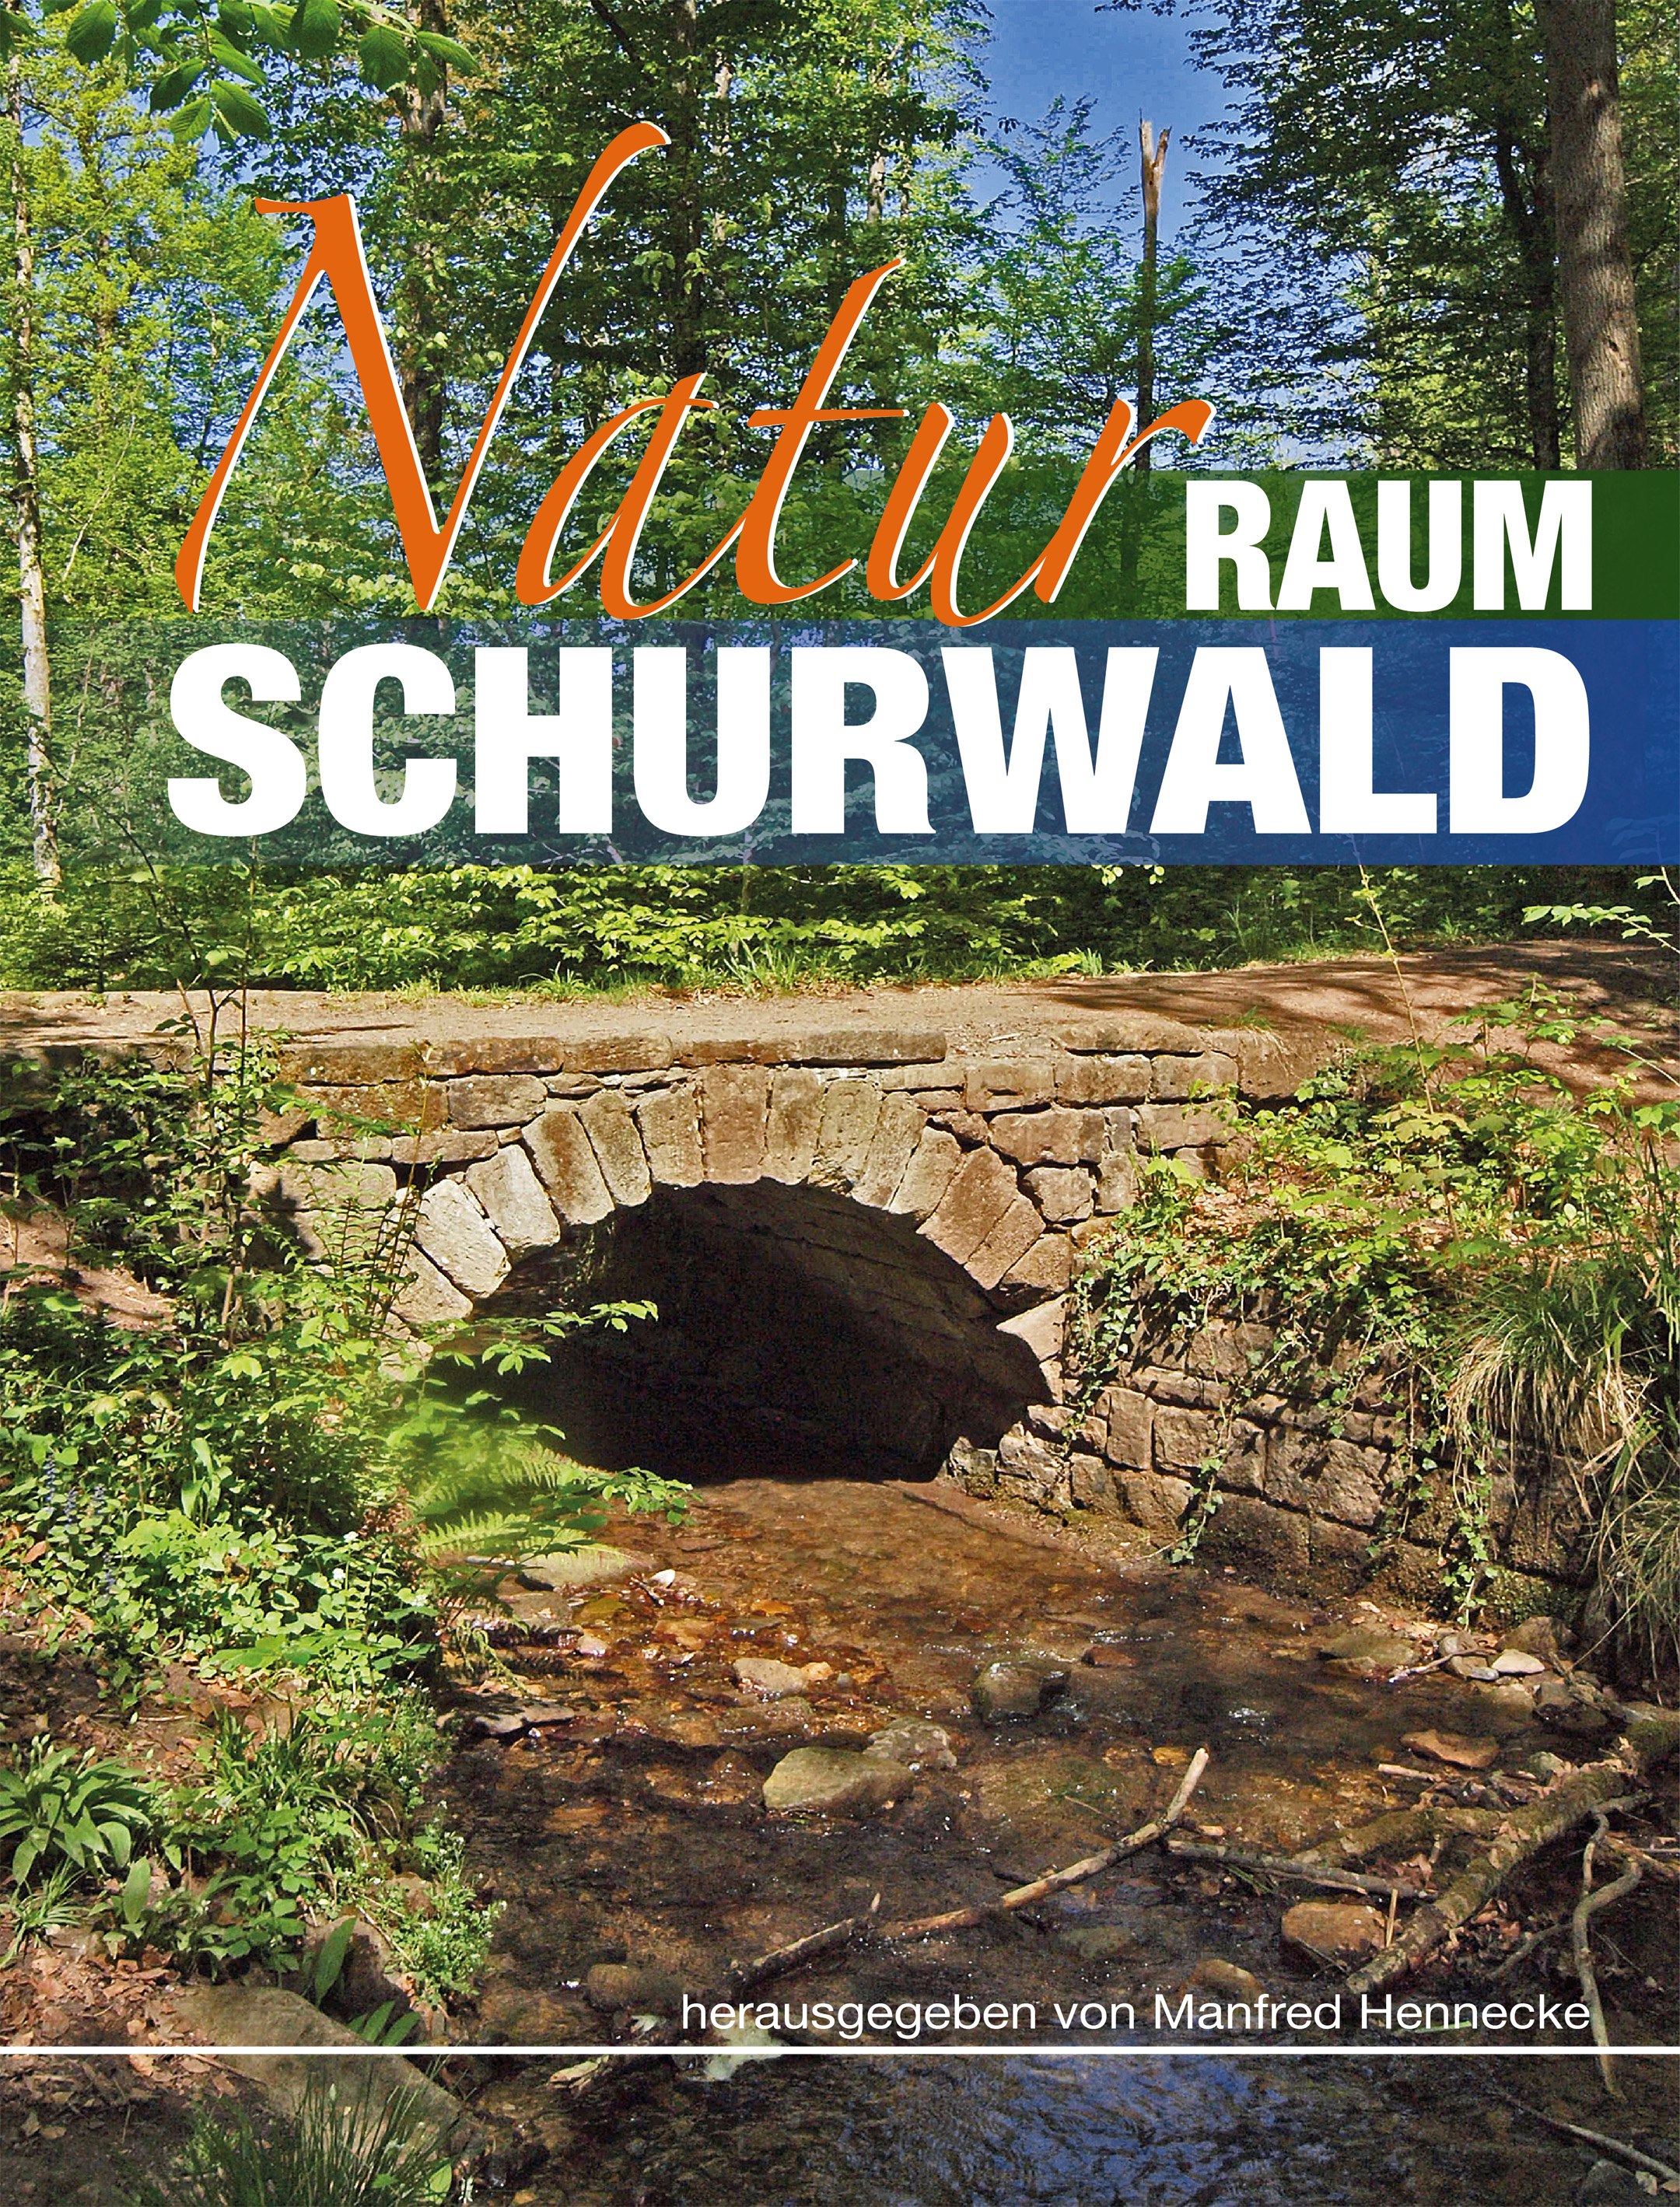 Naturraum Schurwald